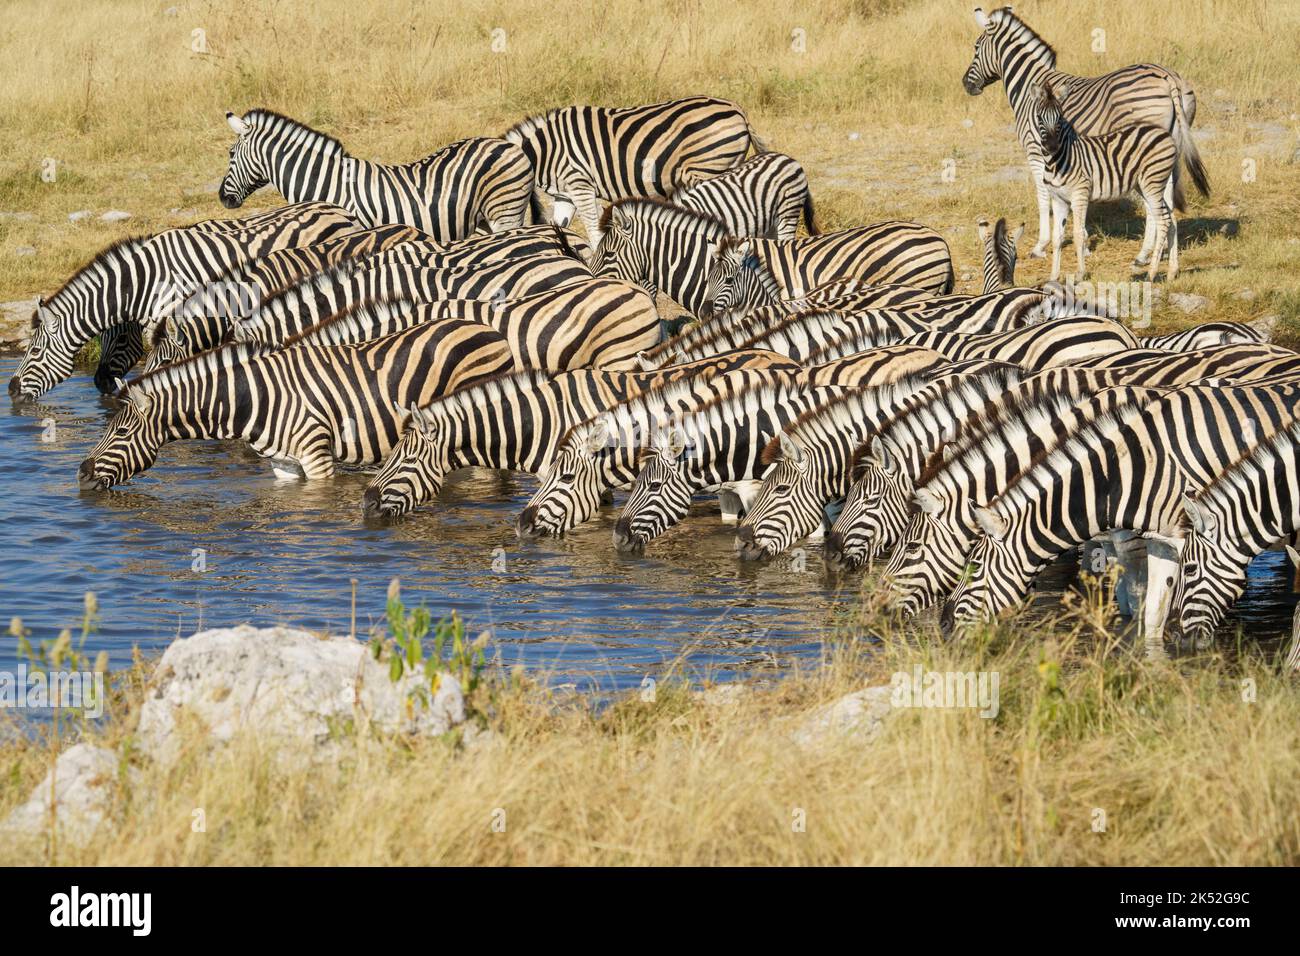 Burchell's zebras (Equus quagga burchellii) together at waterhole drinking. Etosha National Park, Namibia, Africa Stock Photo